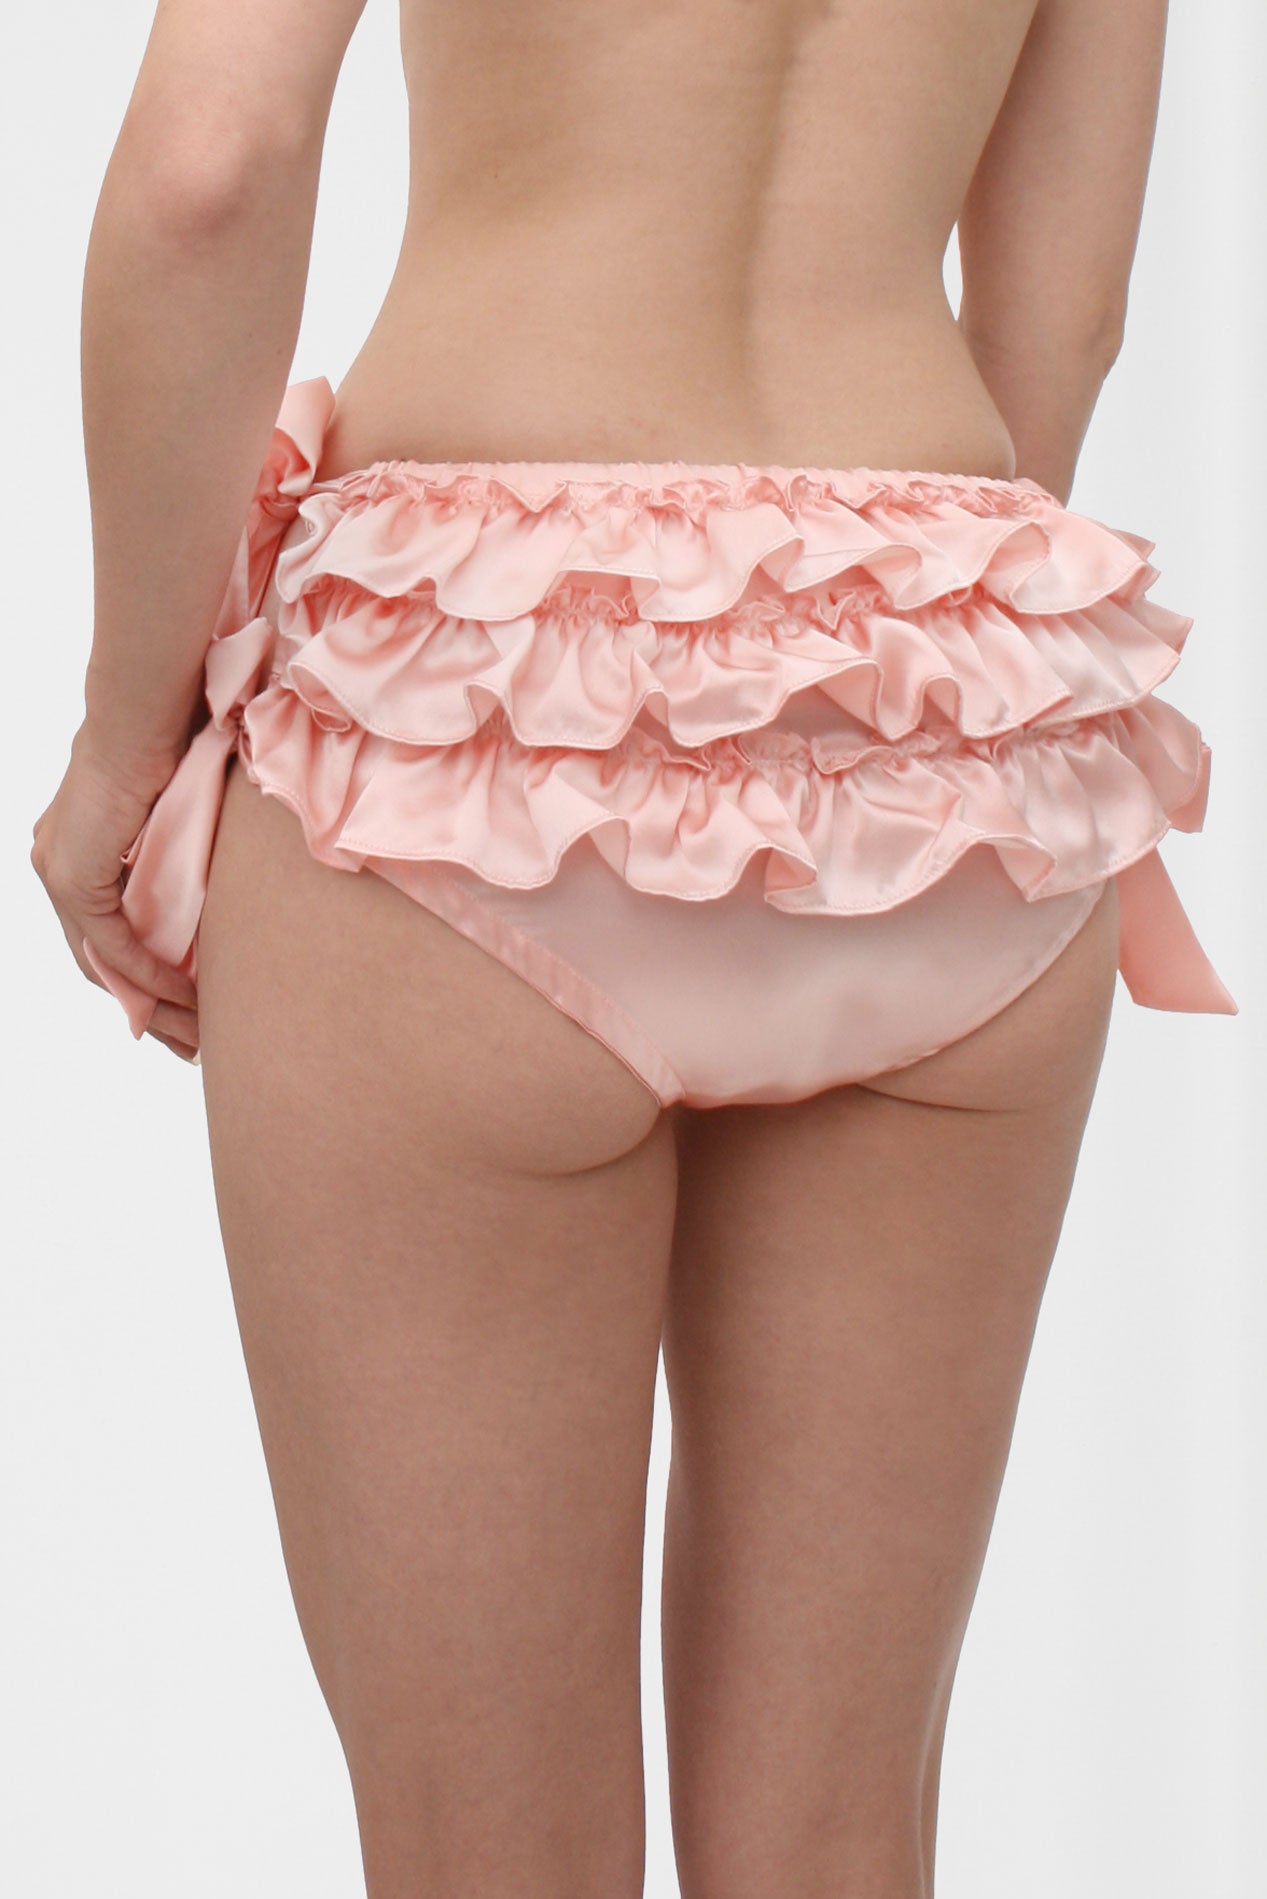 Women Underwear Sexy Ruffle Lingerie Knicker Satin Silk Panties